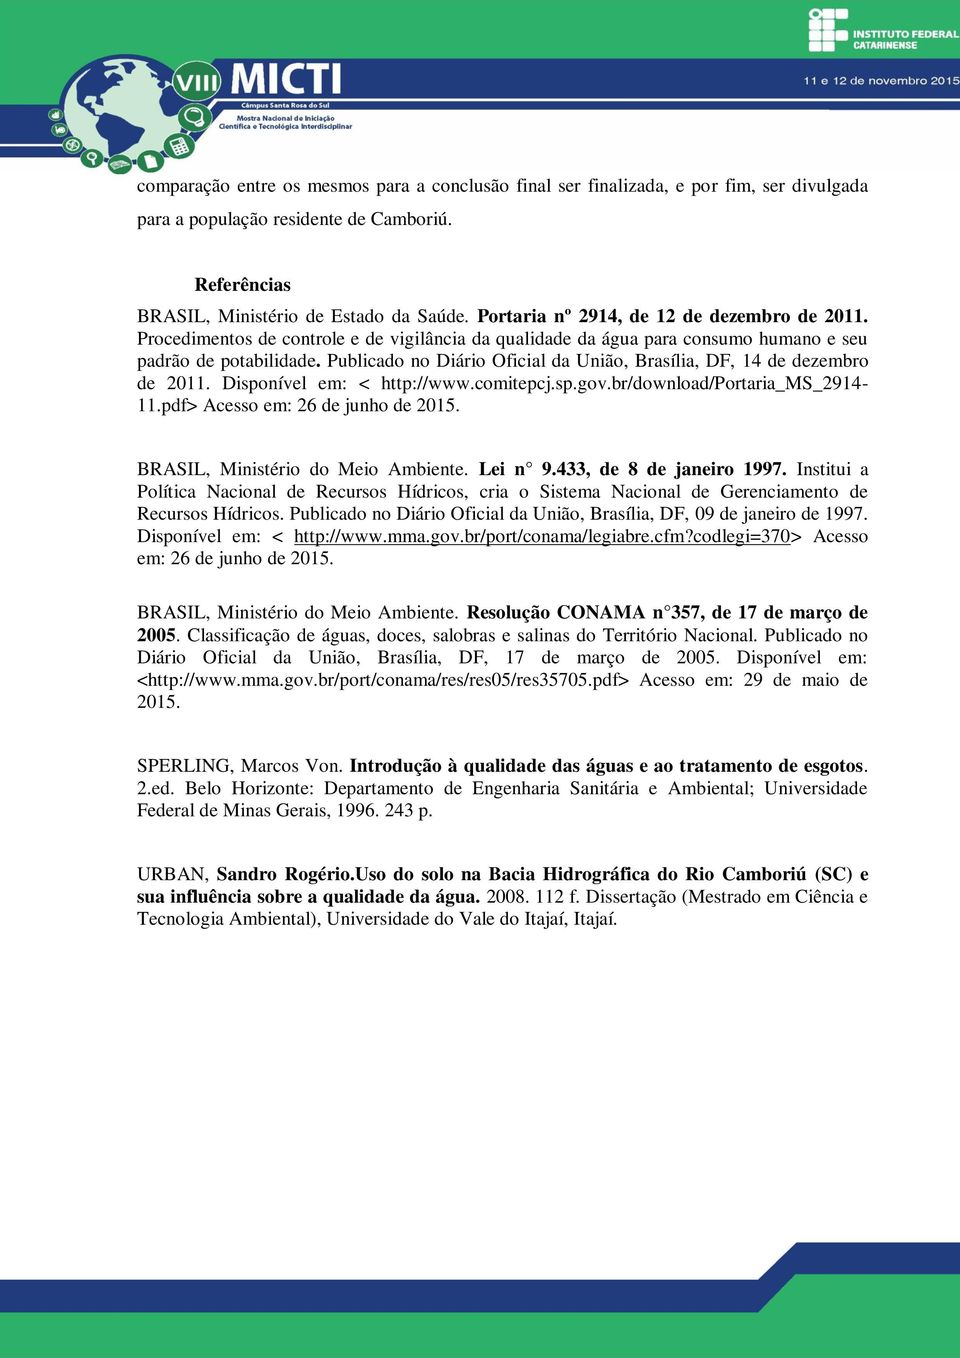 Publicado no Diário Oficial da União, Brasília, DF, 14 de dezembro de 2011. Disponível em: < http://www.comitepcj.sp.gov.br/download/portaria_ms_2914-11.pdf> Acesso em: 26 de junho de 2015.